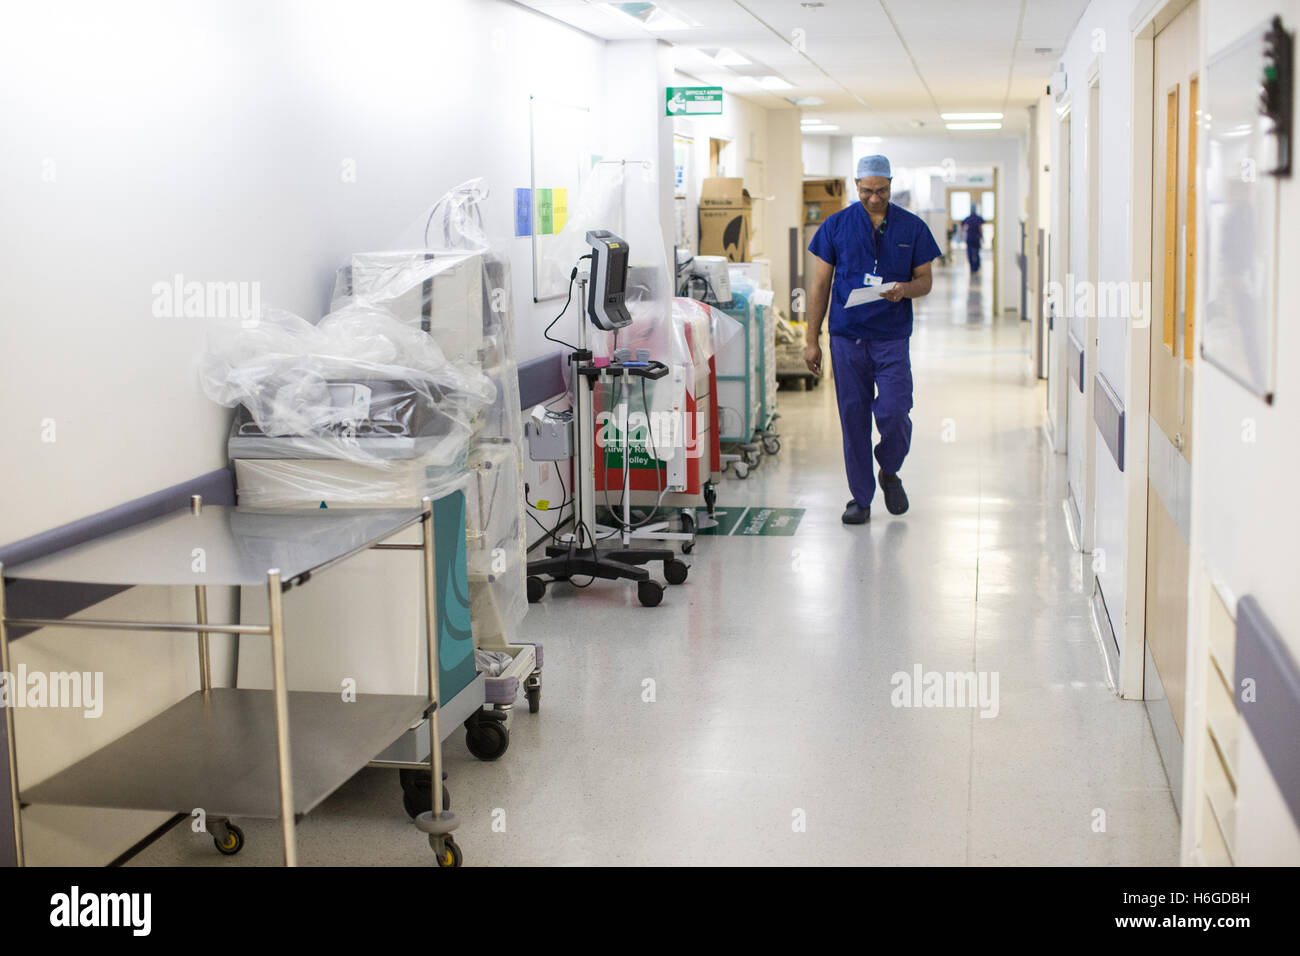 Un chirurgien promenades le long d'un couloir de l'hôpital NHS wearing scrubs Banque D'Images